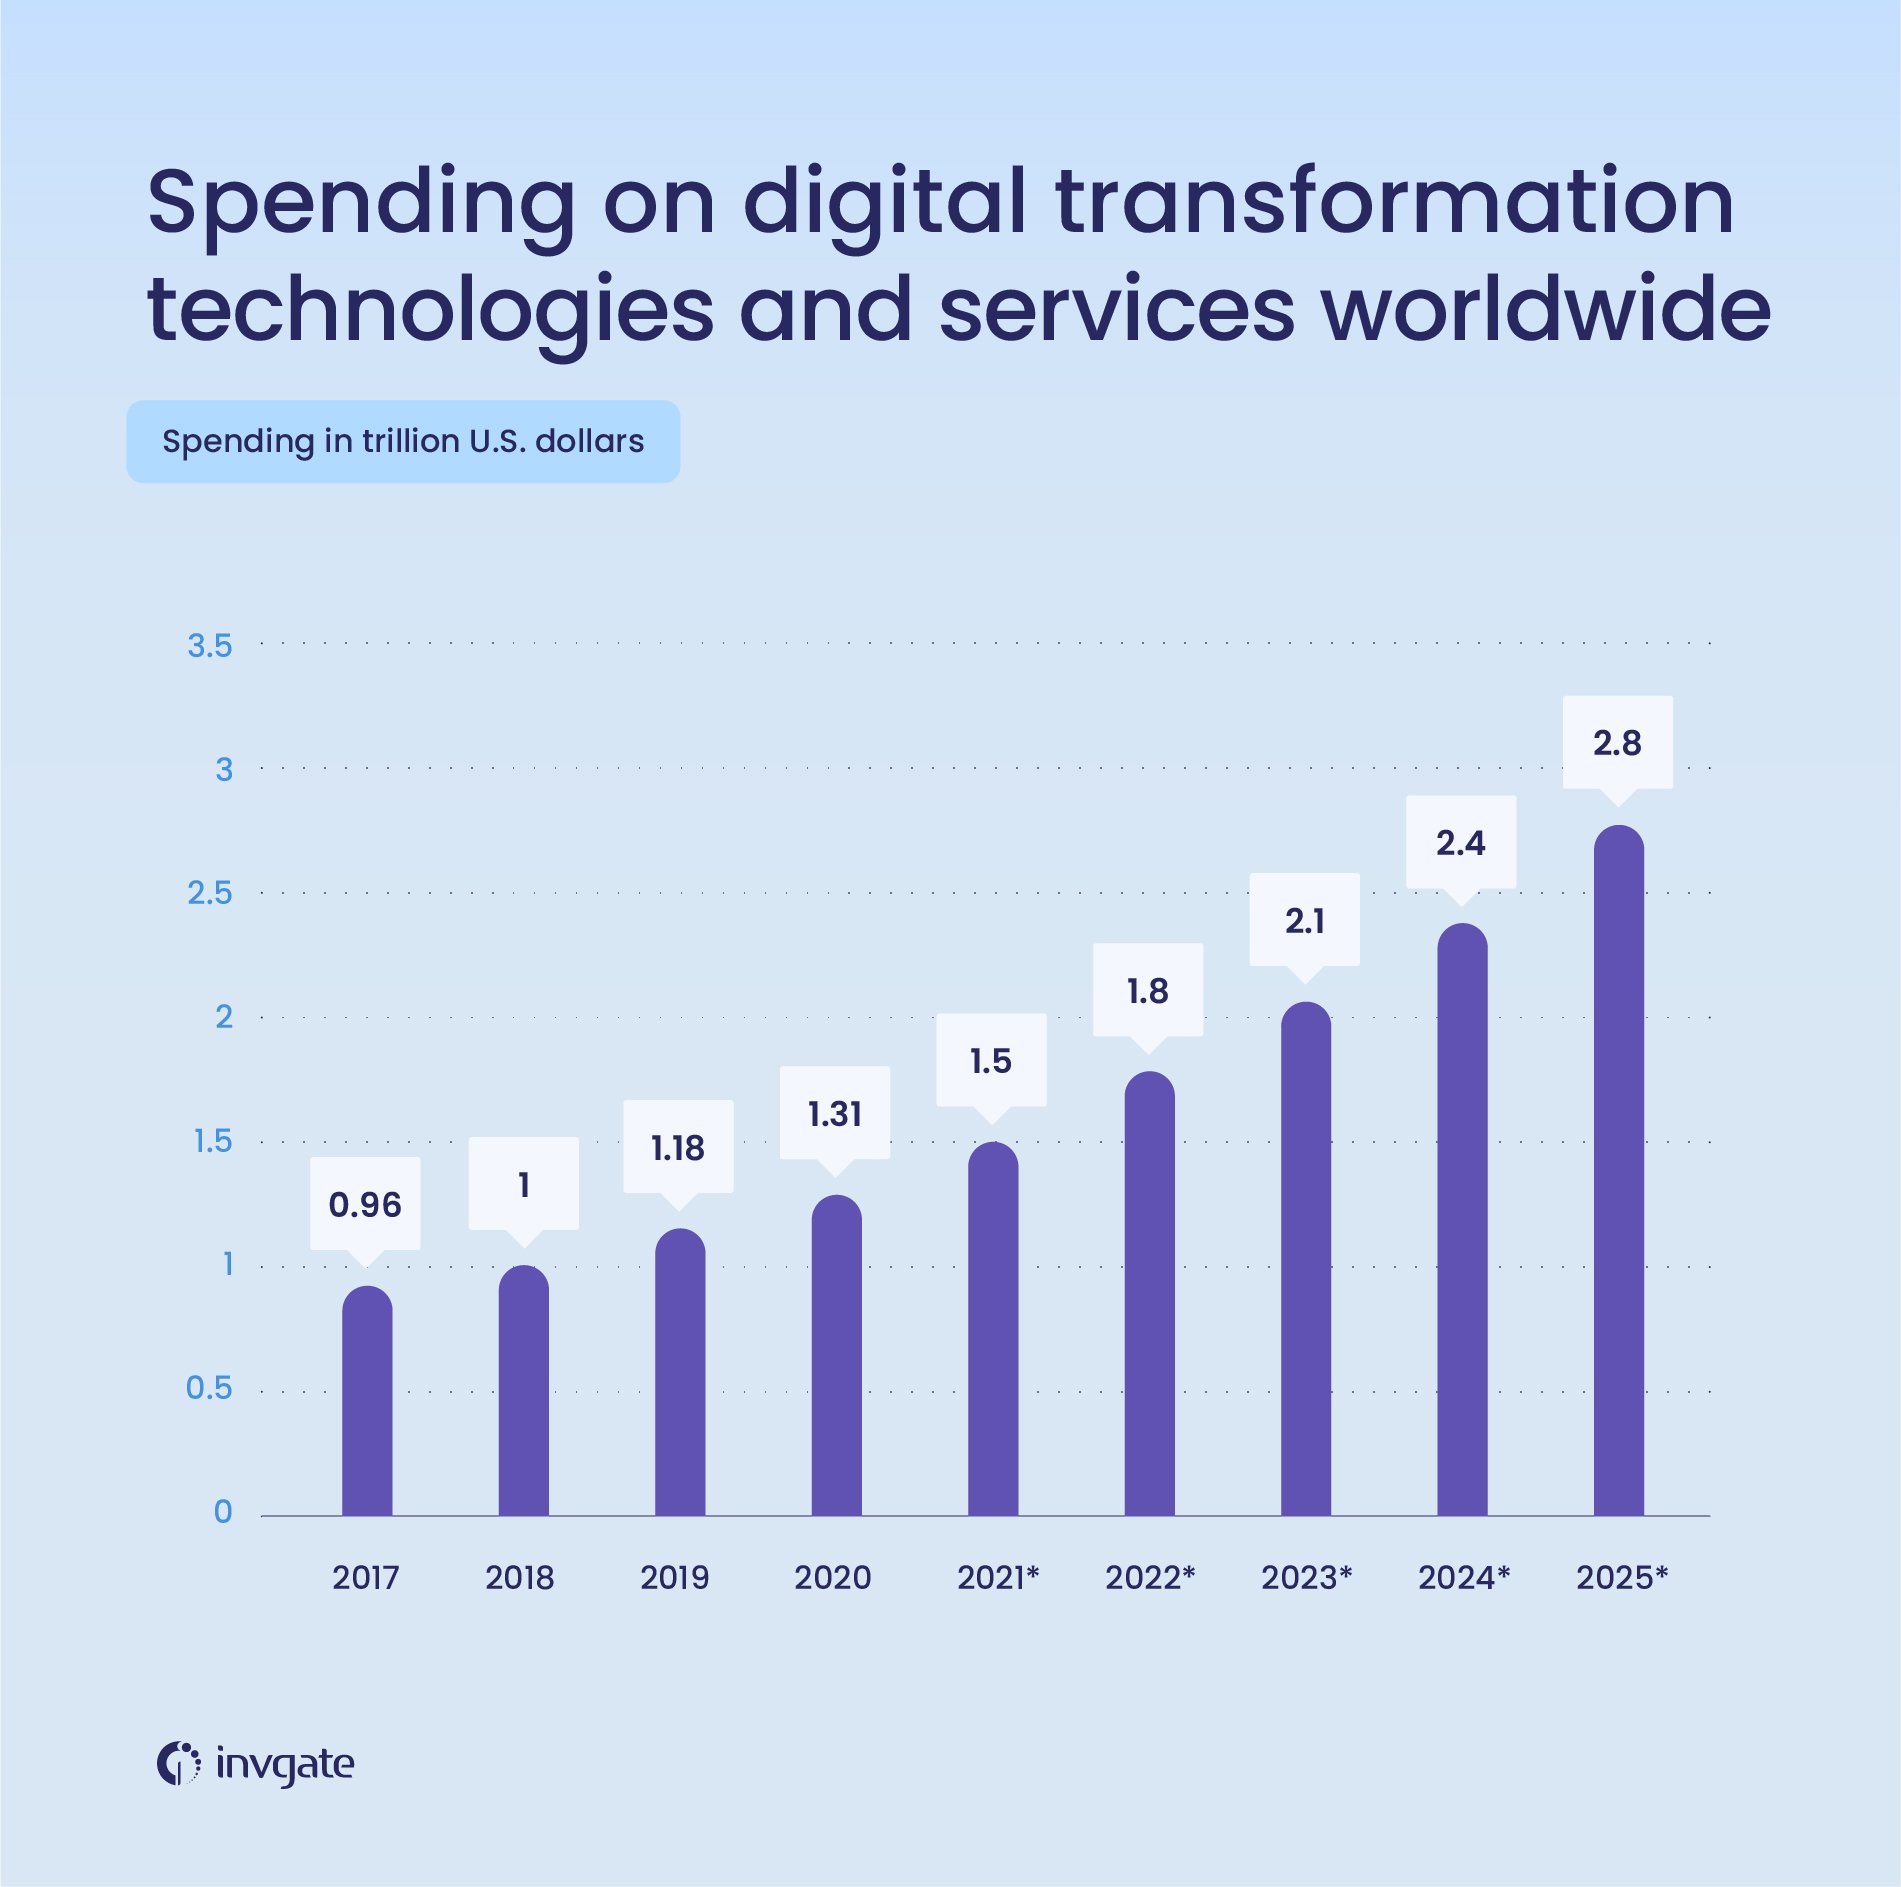 Spending on digital transformation